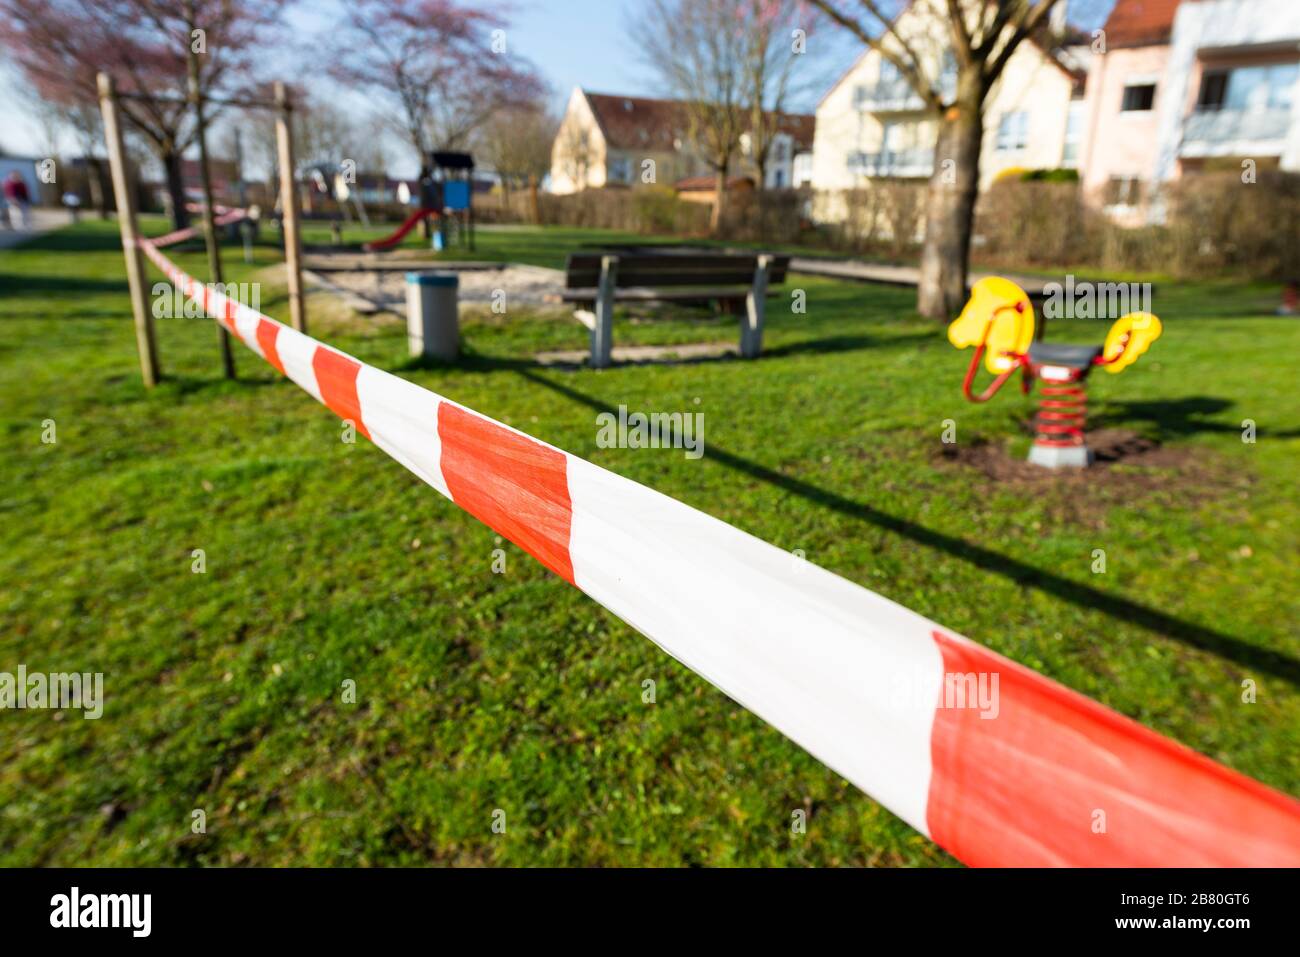 Rot-weisses Absperrband an einem gesperrten Kinderspielplatz während der Corona-Krise in Deutschland Stock Photo